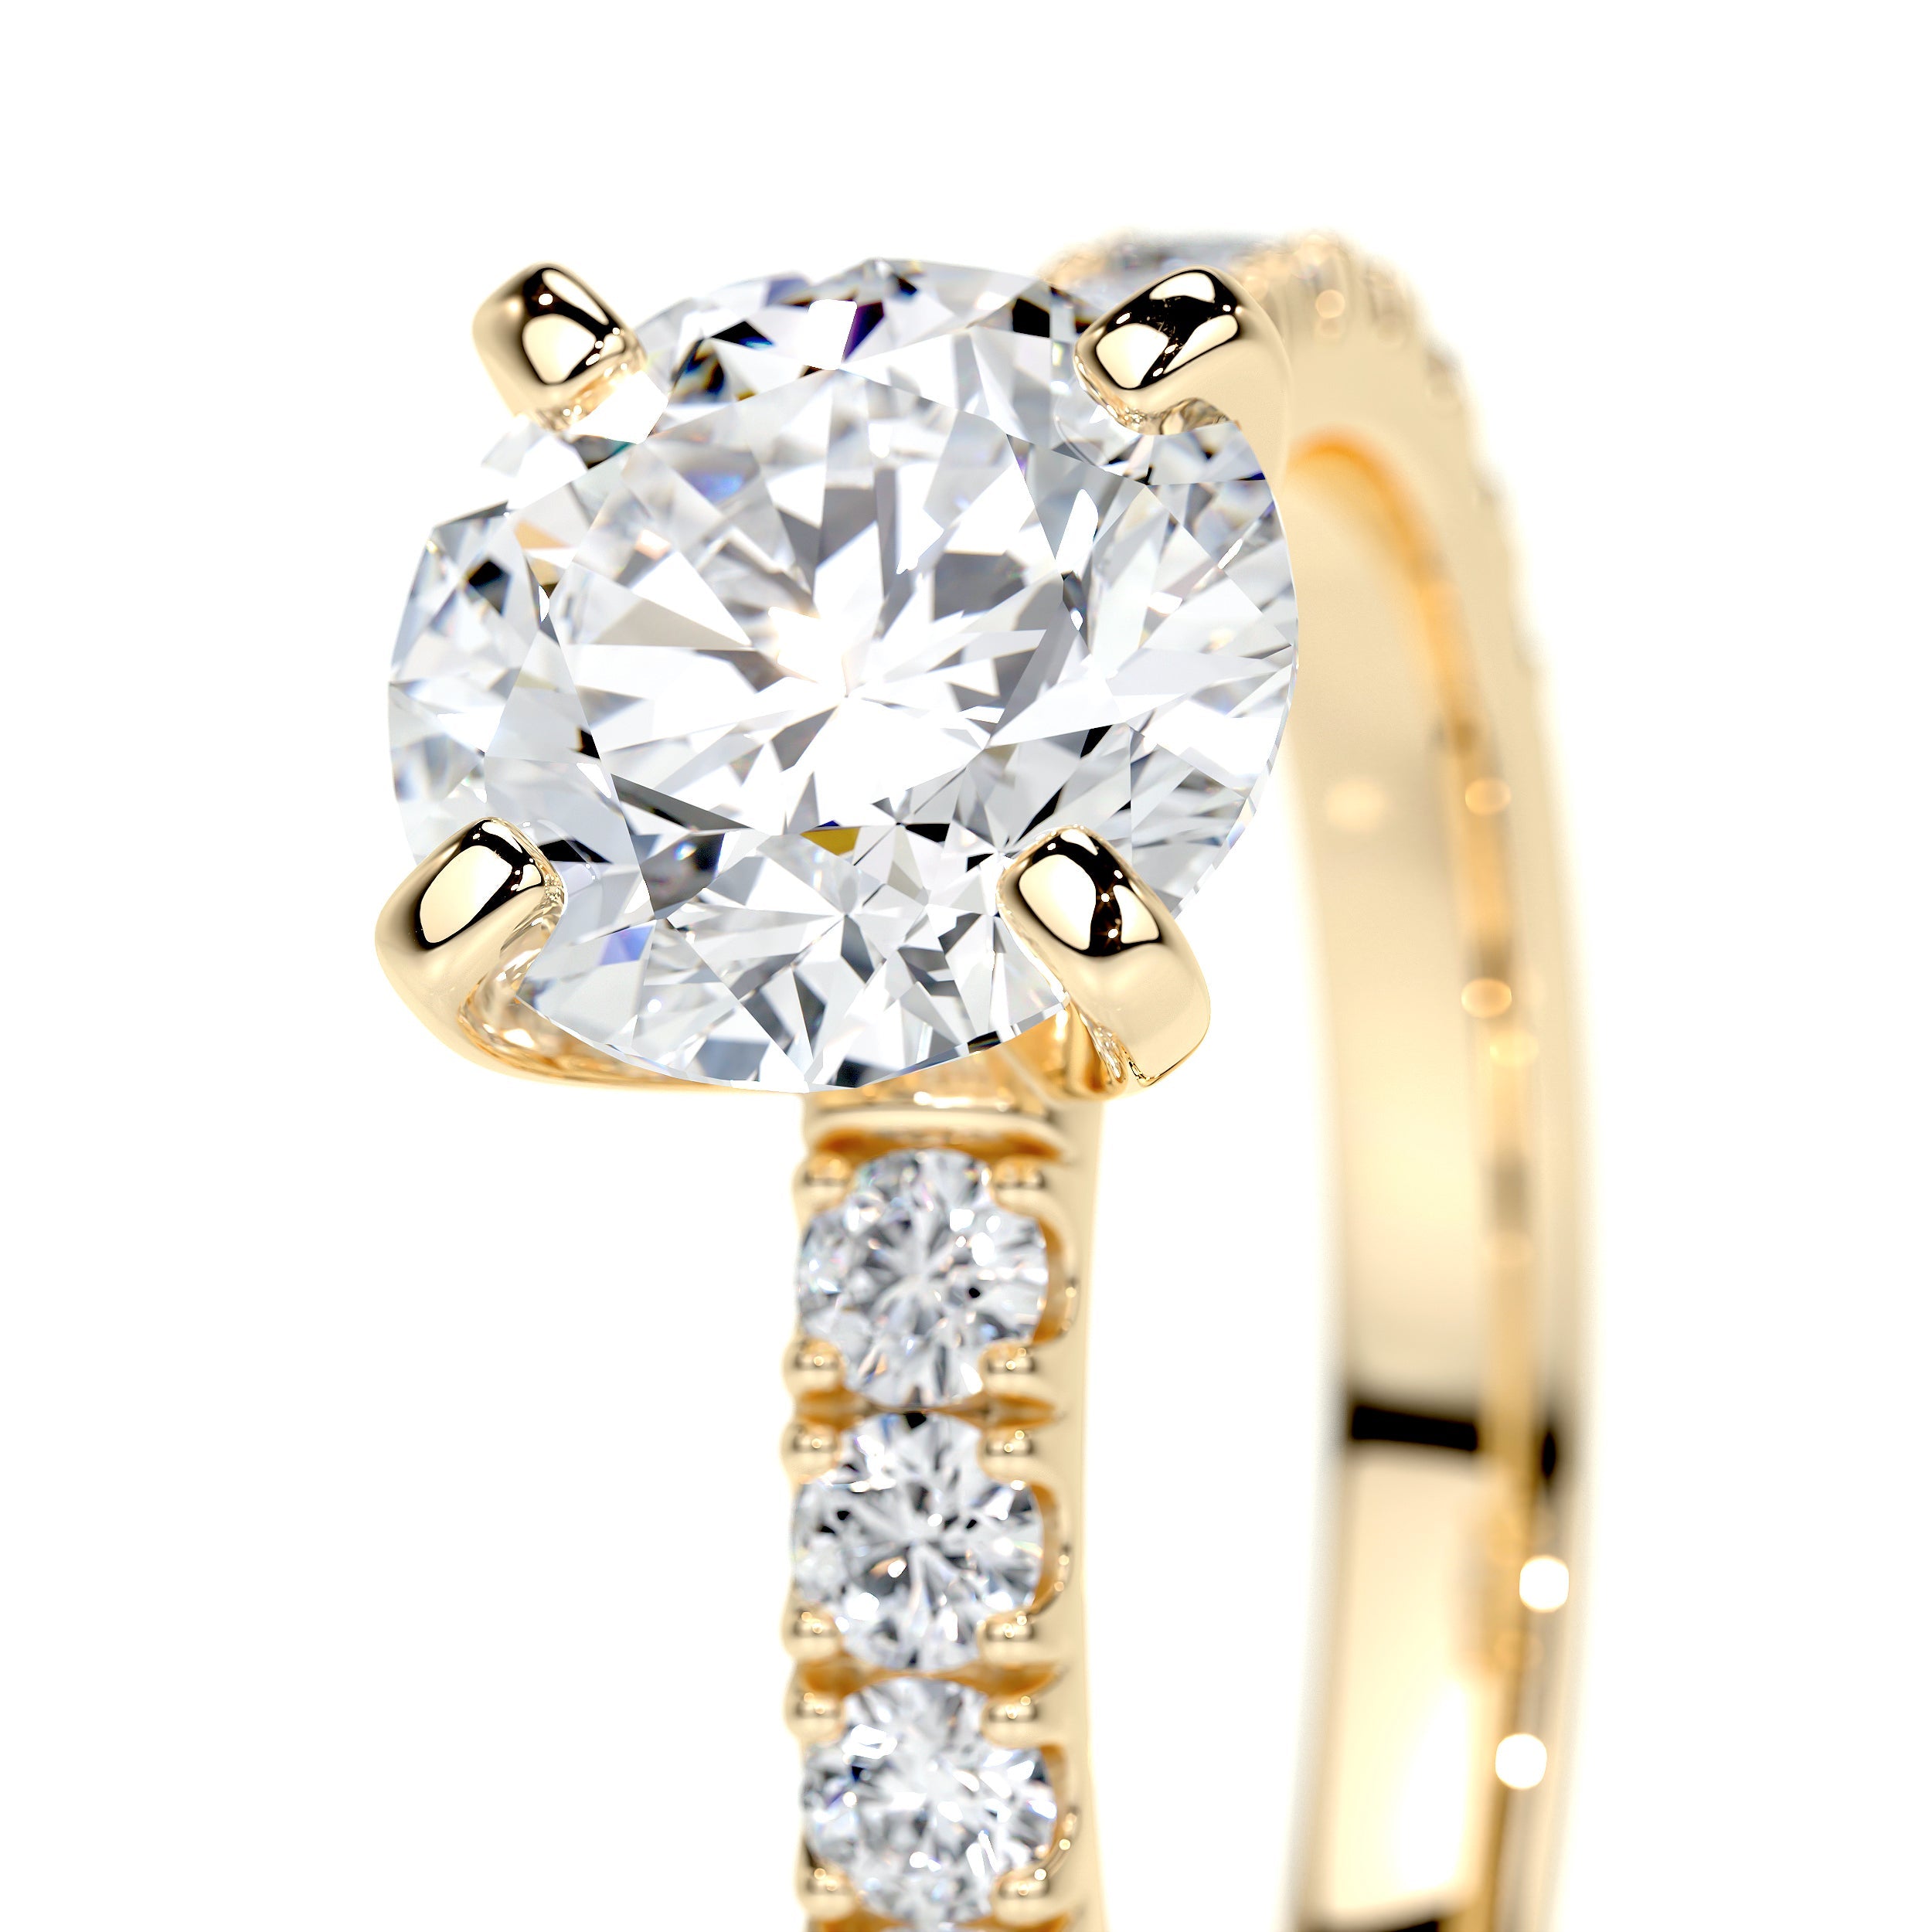 Alison Lab Grown Diamond Ring   (2 Carat) -18K Yellow Gold